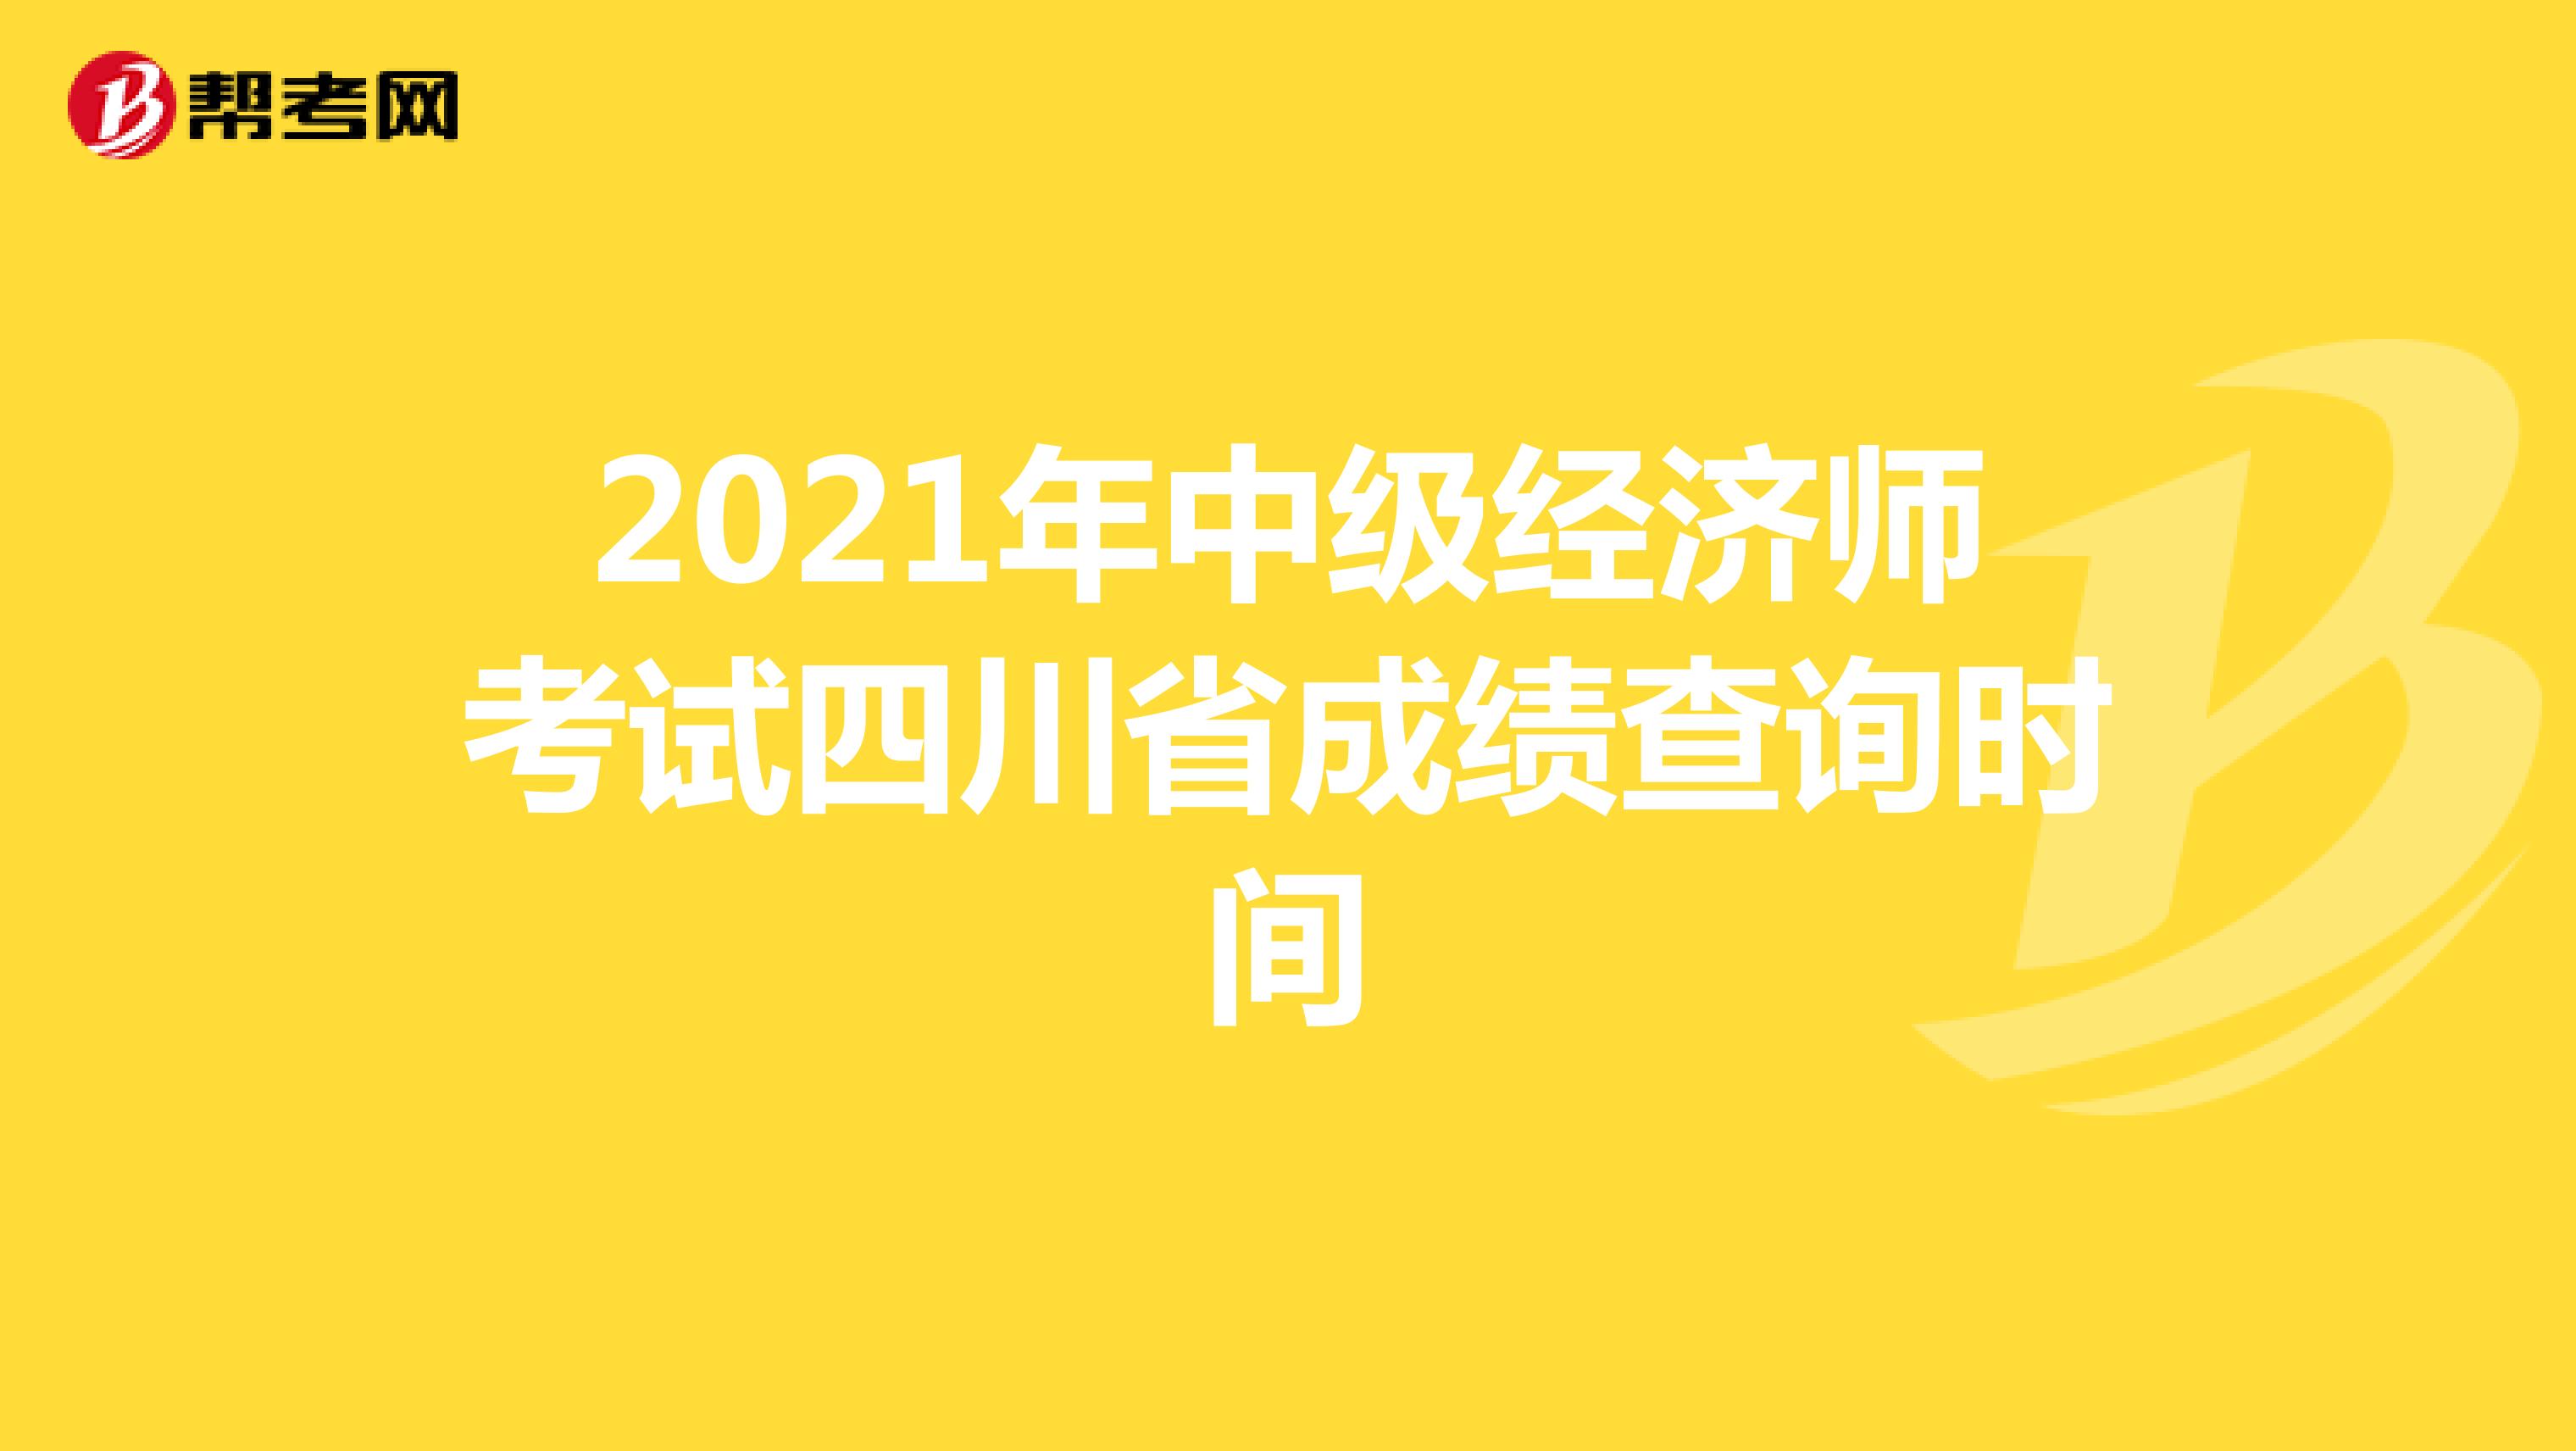 2021年中级经济师考试四川省成绩查询时间